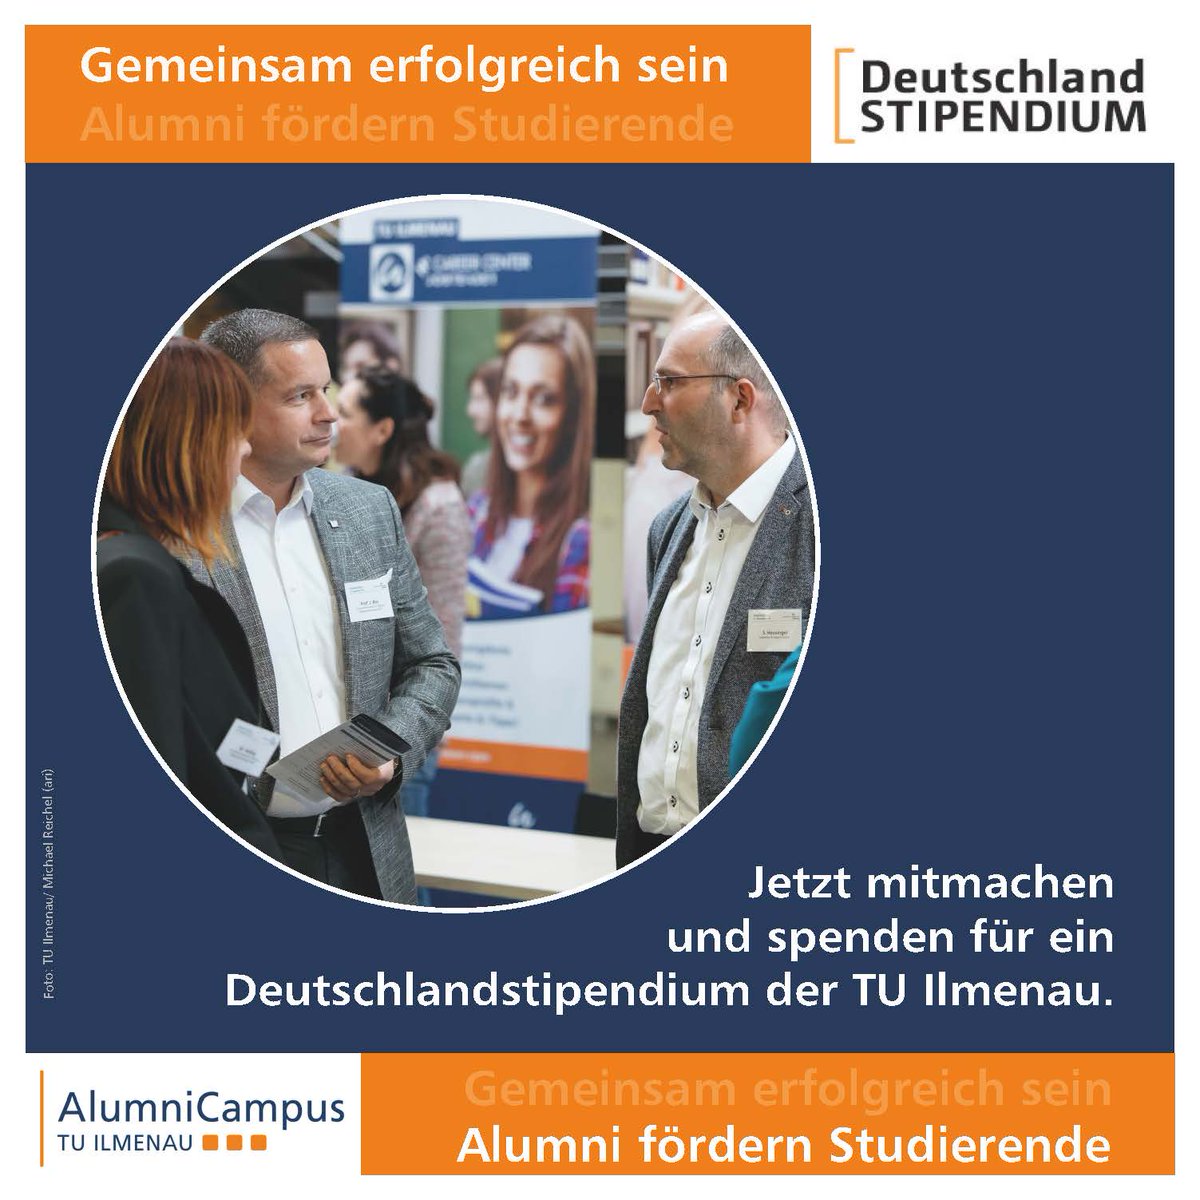 Seit 2021 konnten dank des Engagements unserer Ilmenauer #Alumni 5 Alumni-Deutschlandstipendien vergeben werden. Dafür möchten wir zum Jahresende Danke sagen! Möchten auch Sie engagierte und leistungsstarke #Studierende @TU_Ilmenau finanziell unterstützen? lnkd.in/eAMDN67